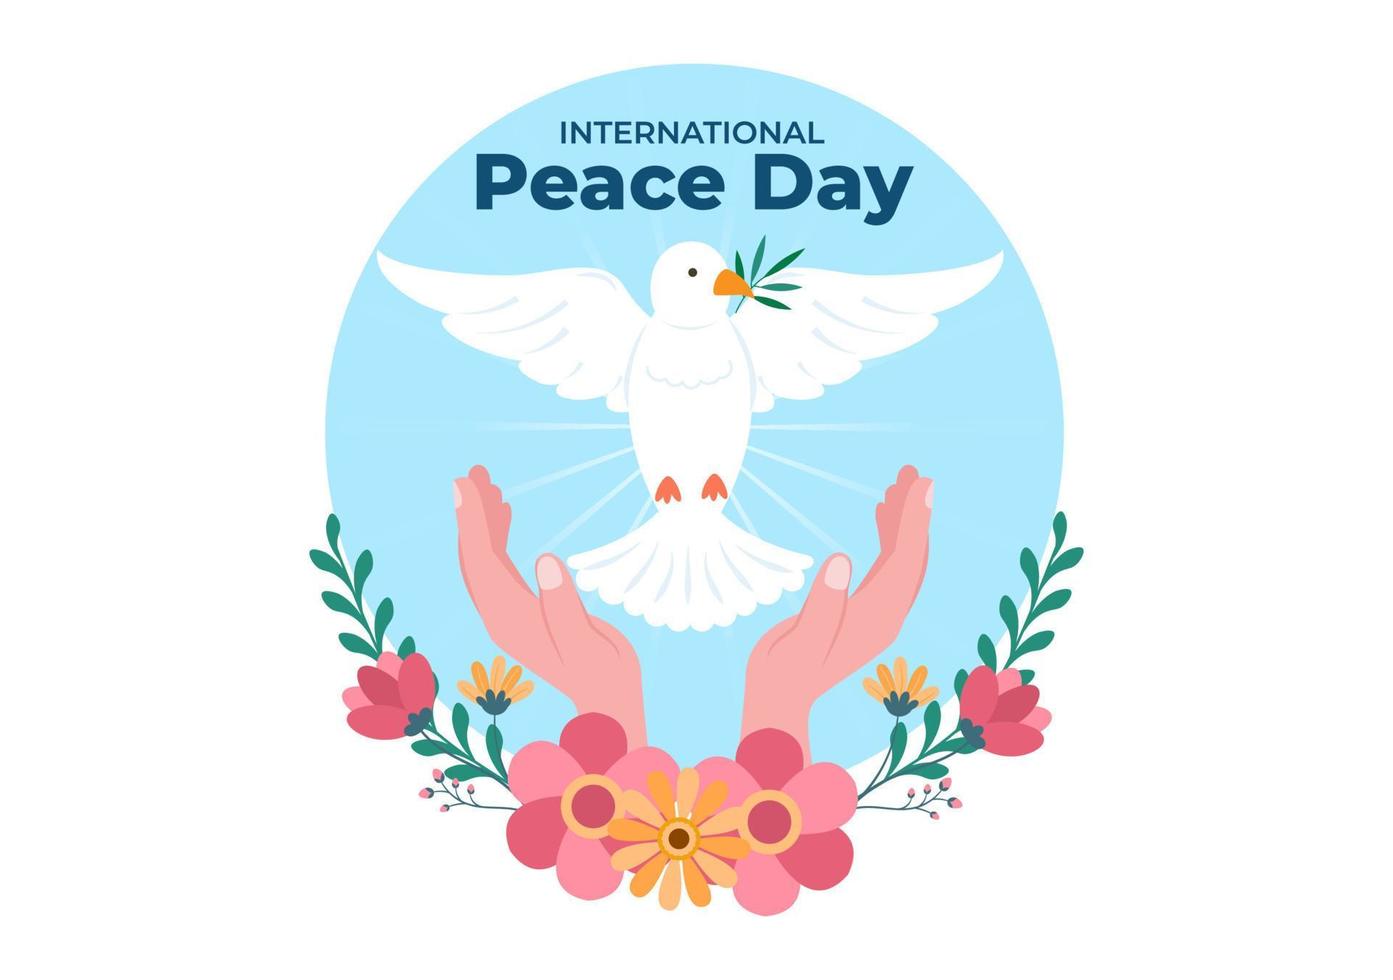 internationale vredesdag cartoon afbeelding met handen, duif, globe en blauwe lucht om welvarend te creëren in de wereld in vlakke stijl vector